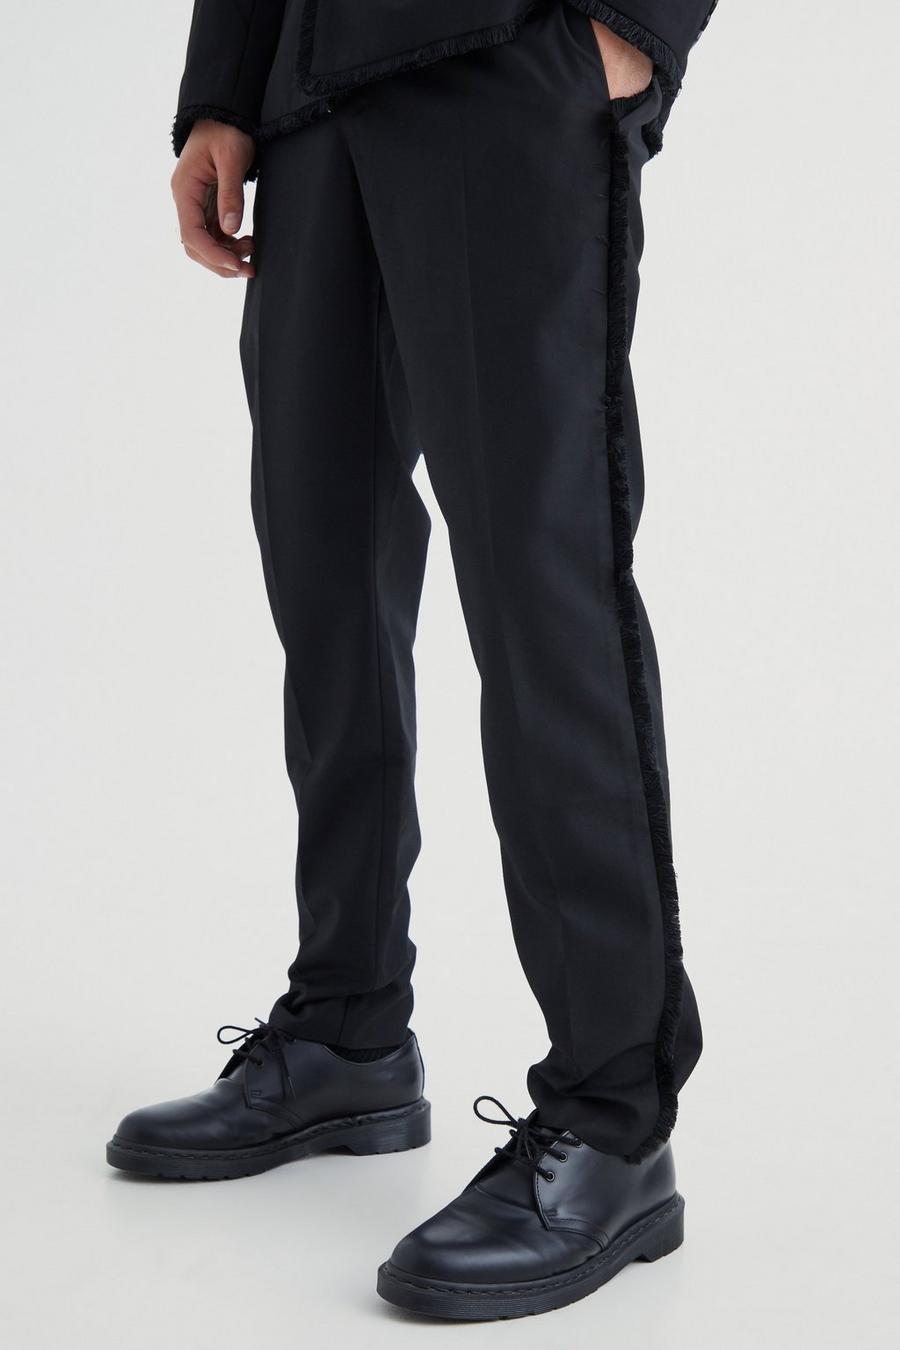 Pantalón ajustado elegante desgastado, Black negro